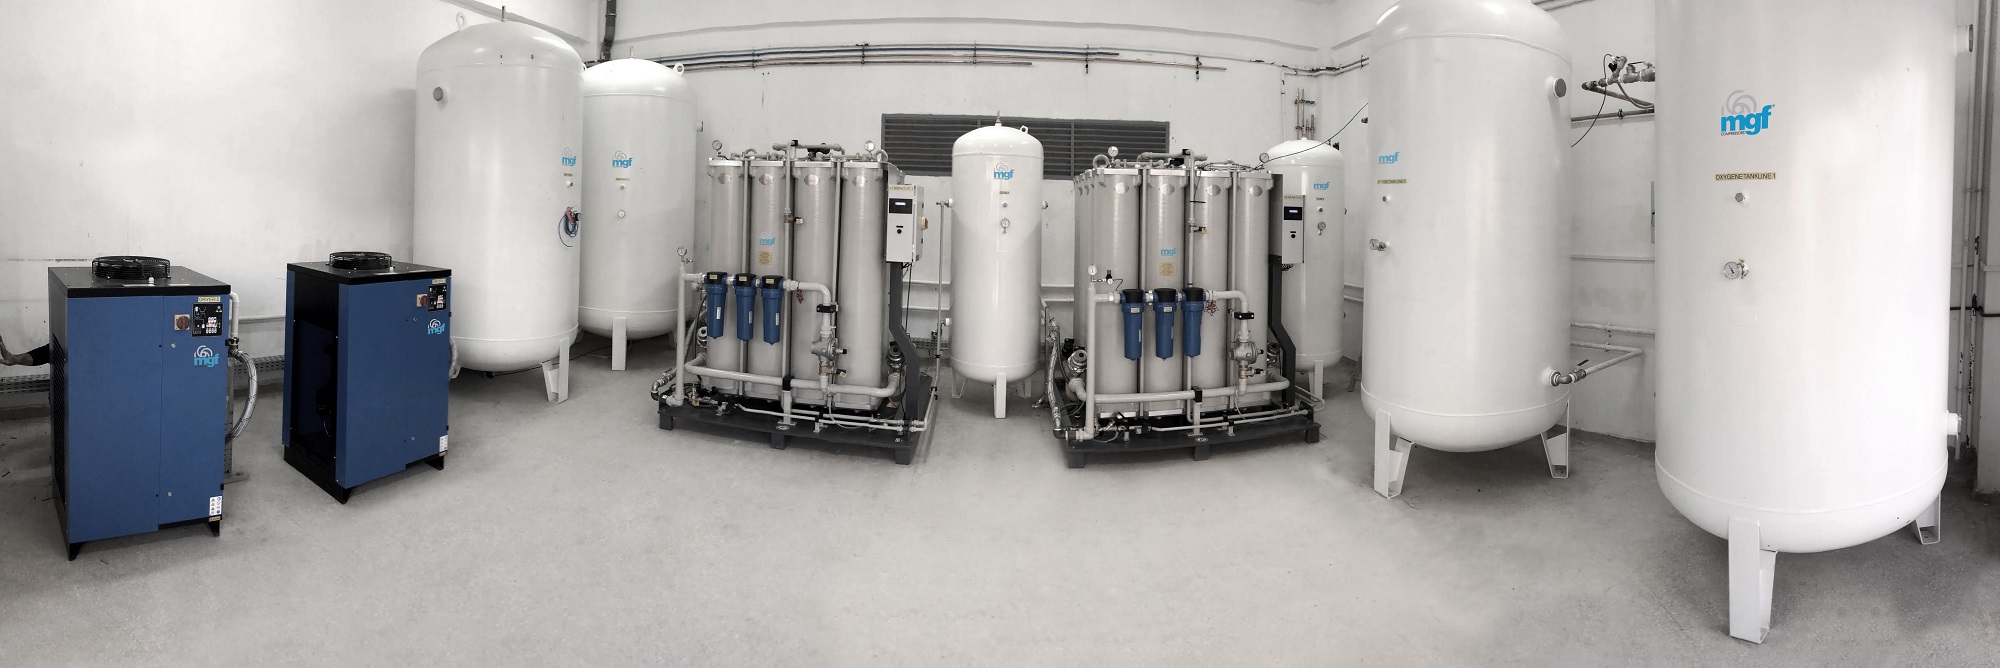 Générateurs d'oxygène médical et production sur site